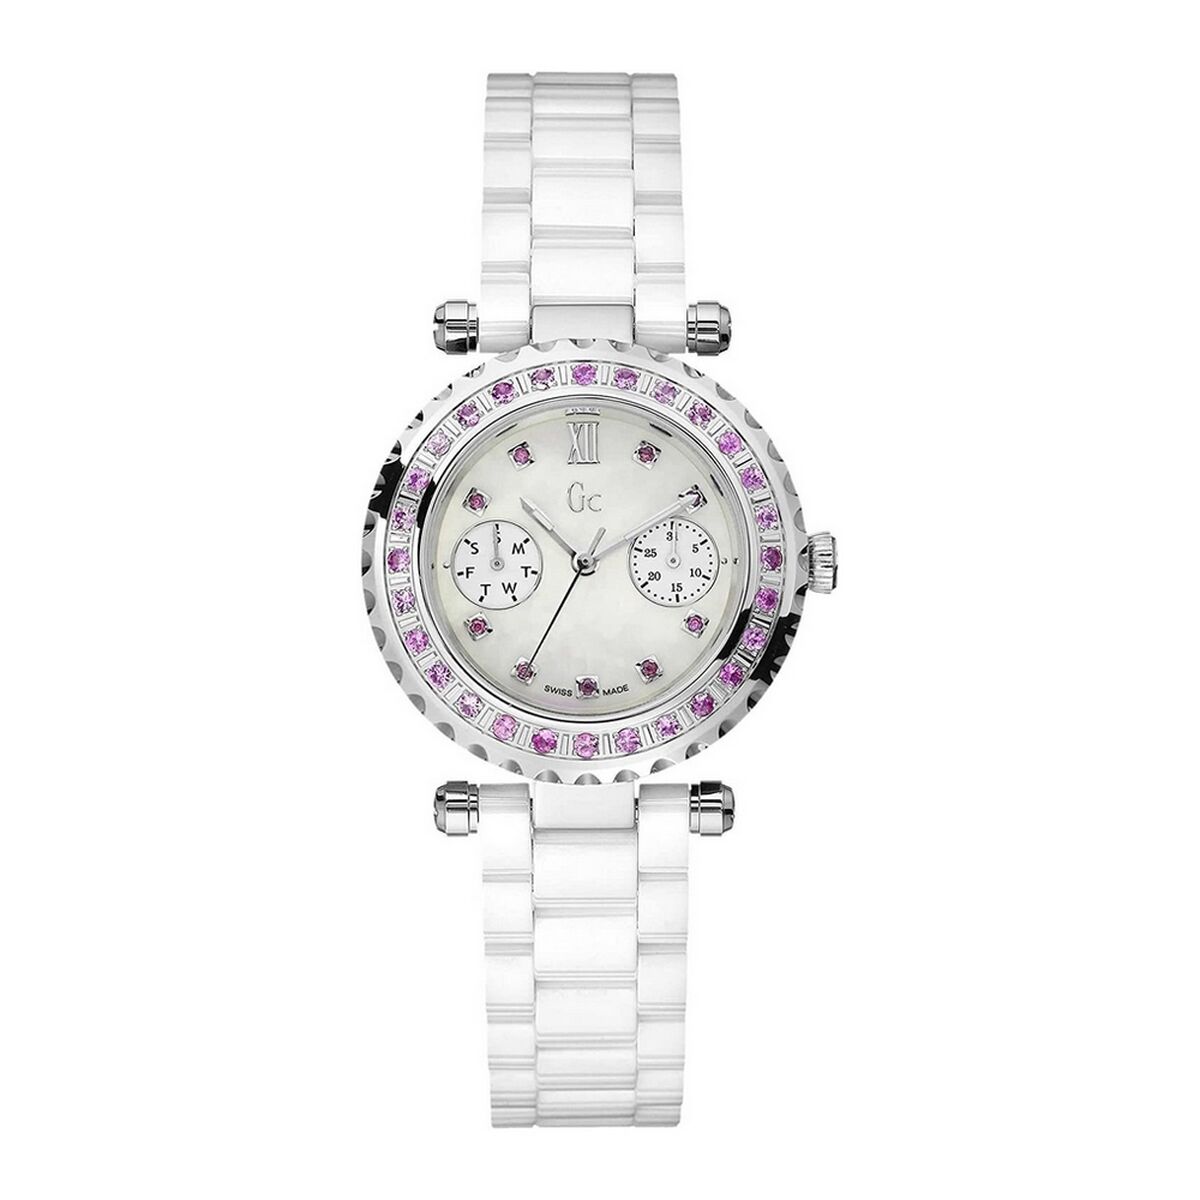 Kaufe Damenuhr GC Watches 92000L1 (Ø 36 mm) bei AWK Flagship um € 489.00